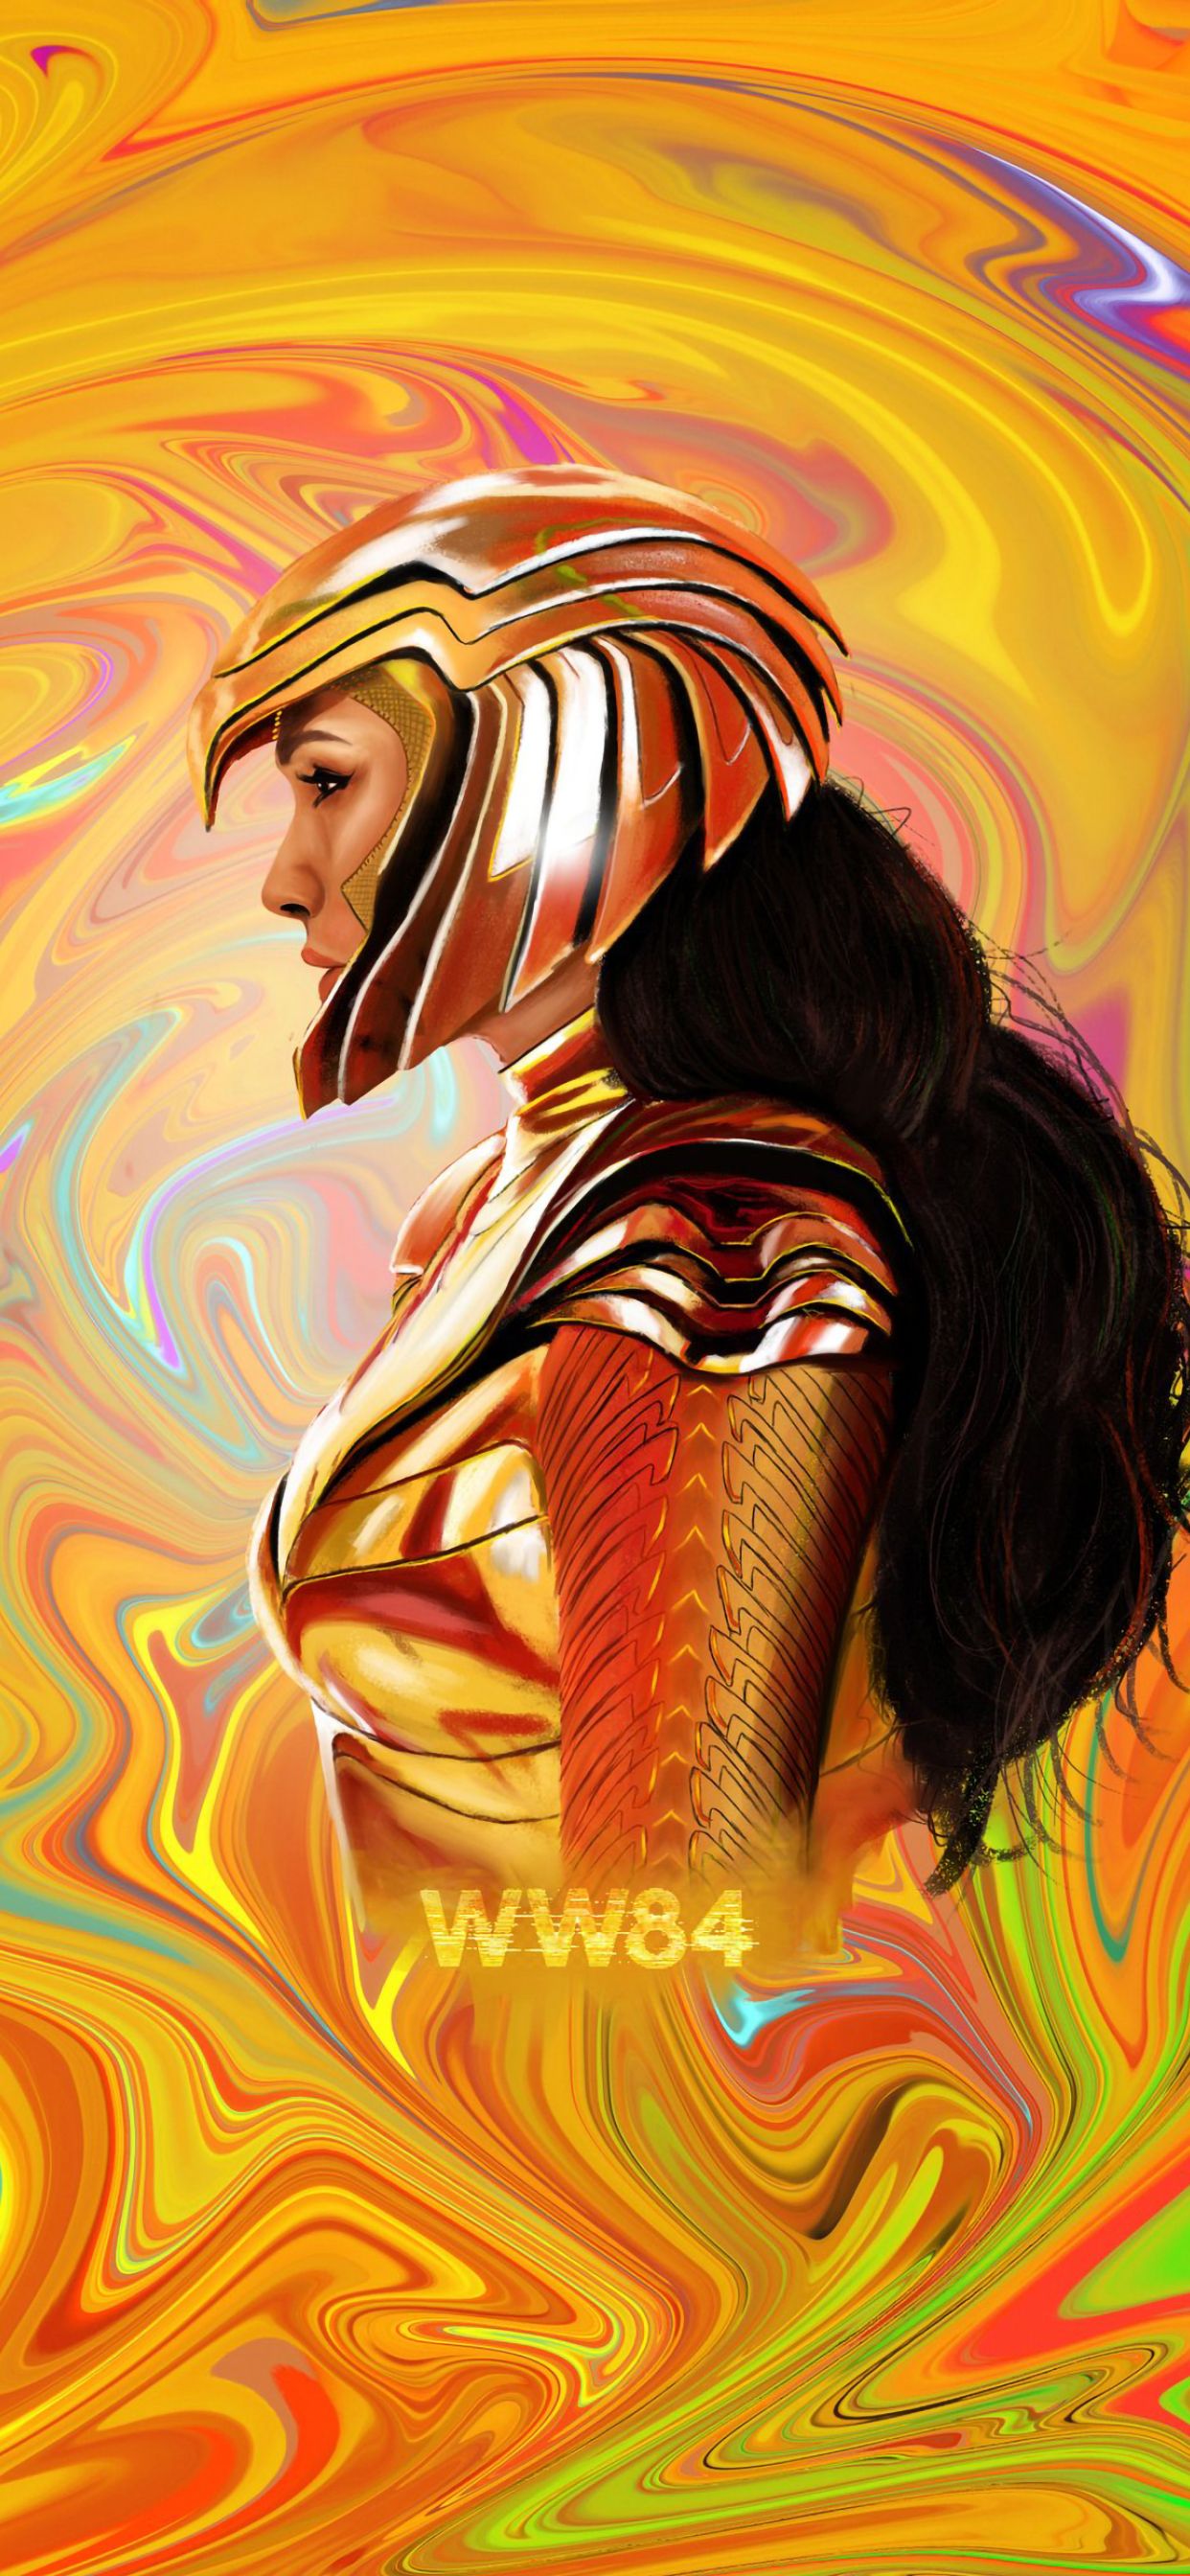 Wonder Woman Art iPhone XS MAX Wallpaper, HD Movies 4K